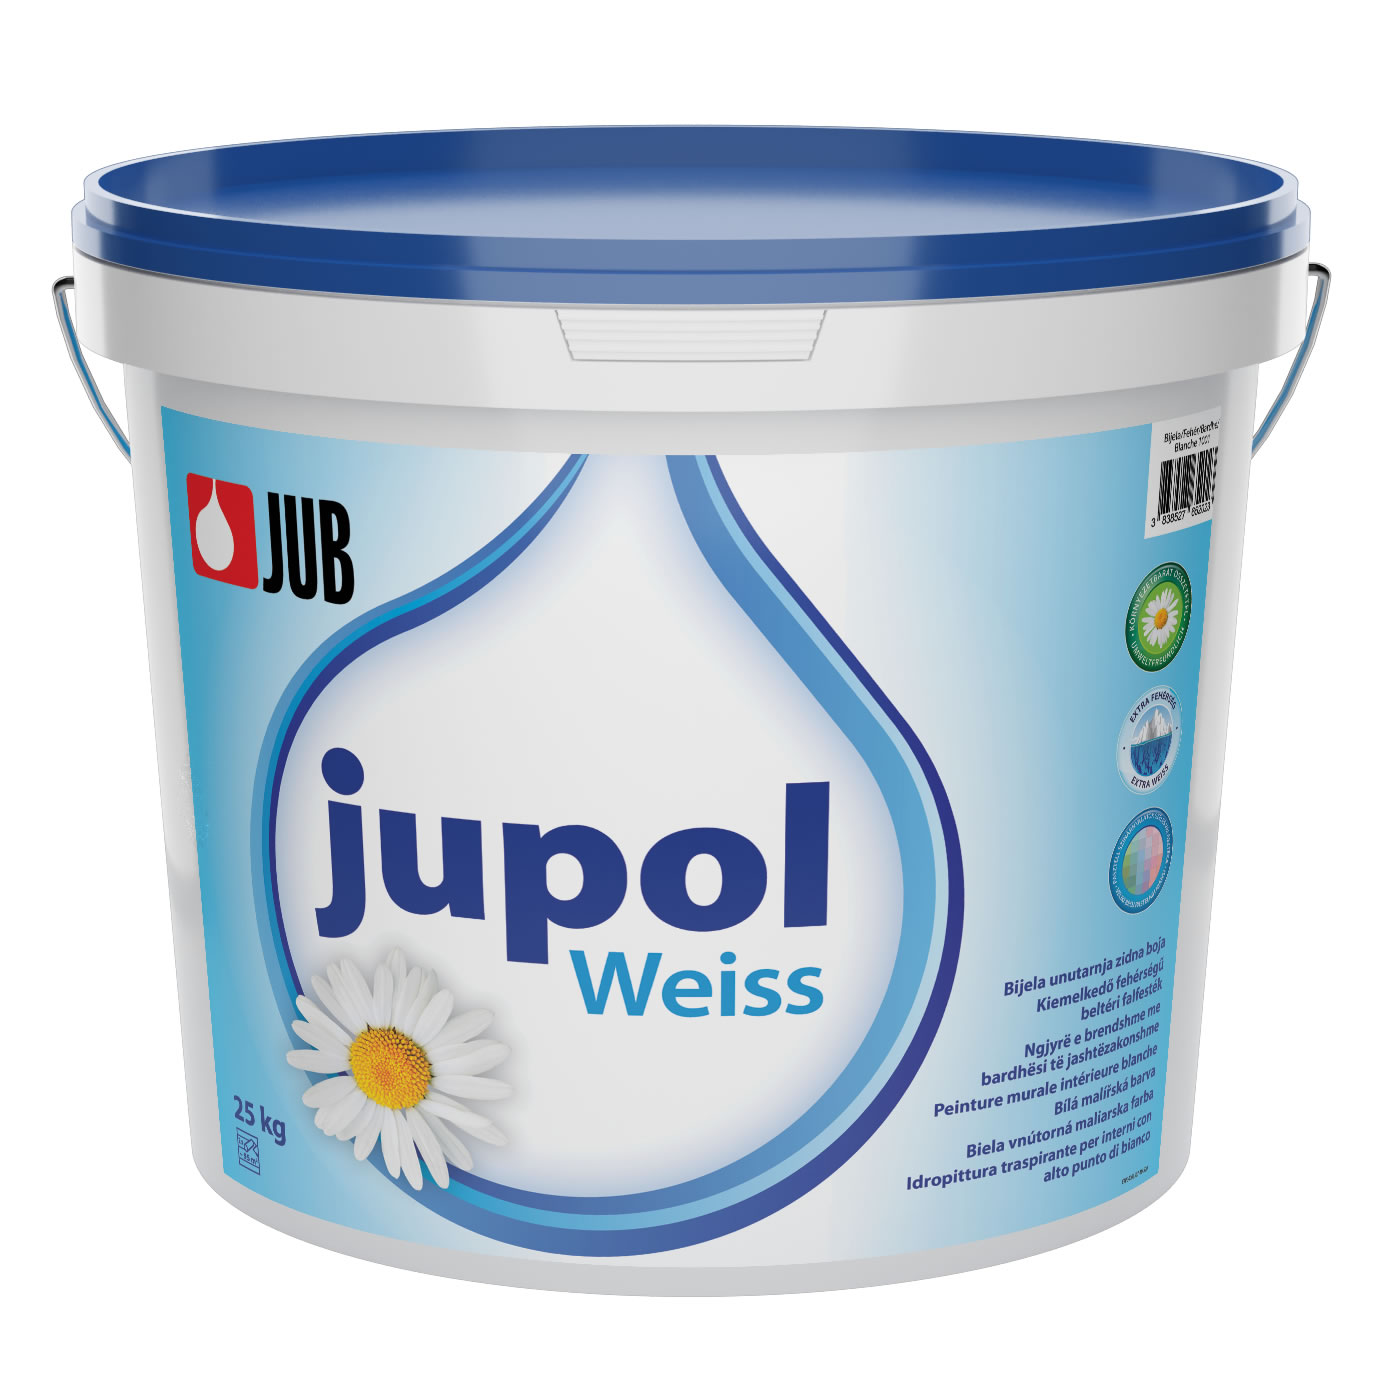 JUB JUPOL Weiss Extra biela maliarska farba Biela,5L